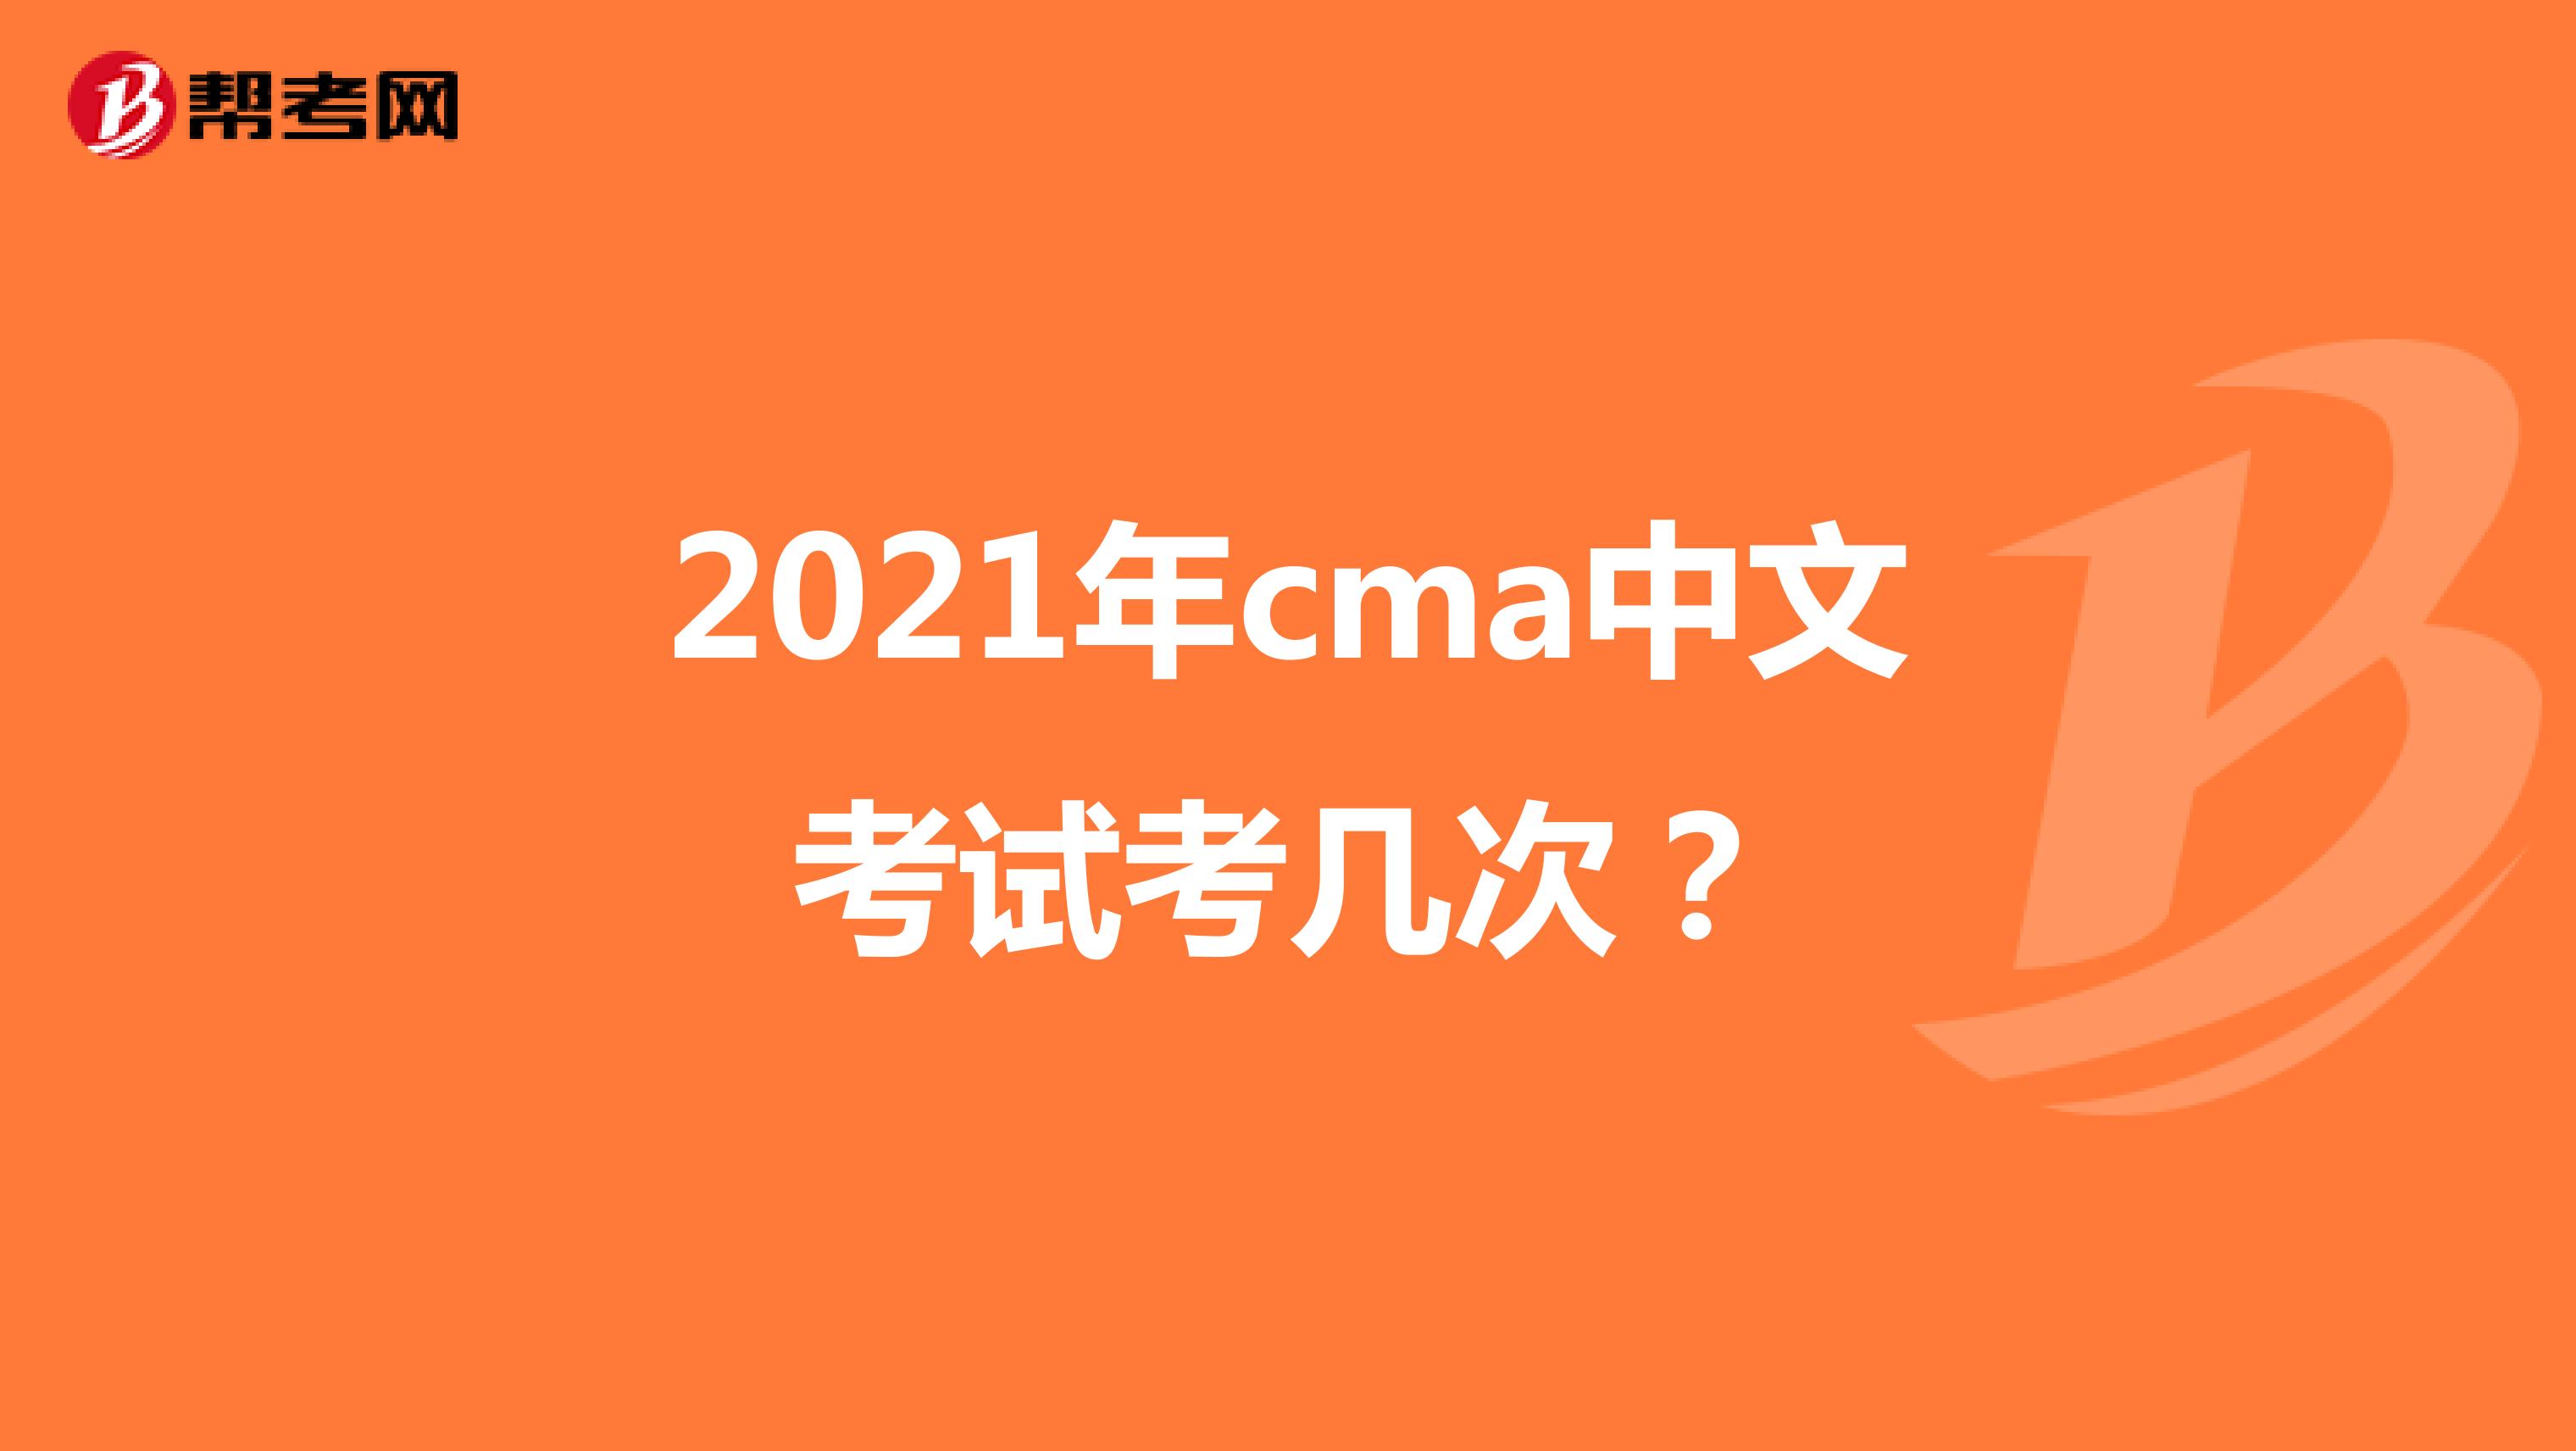 2021年cma中文考试考几次？